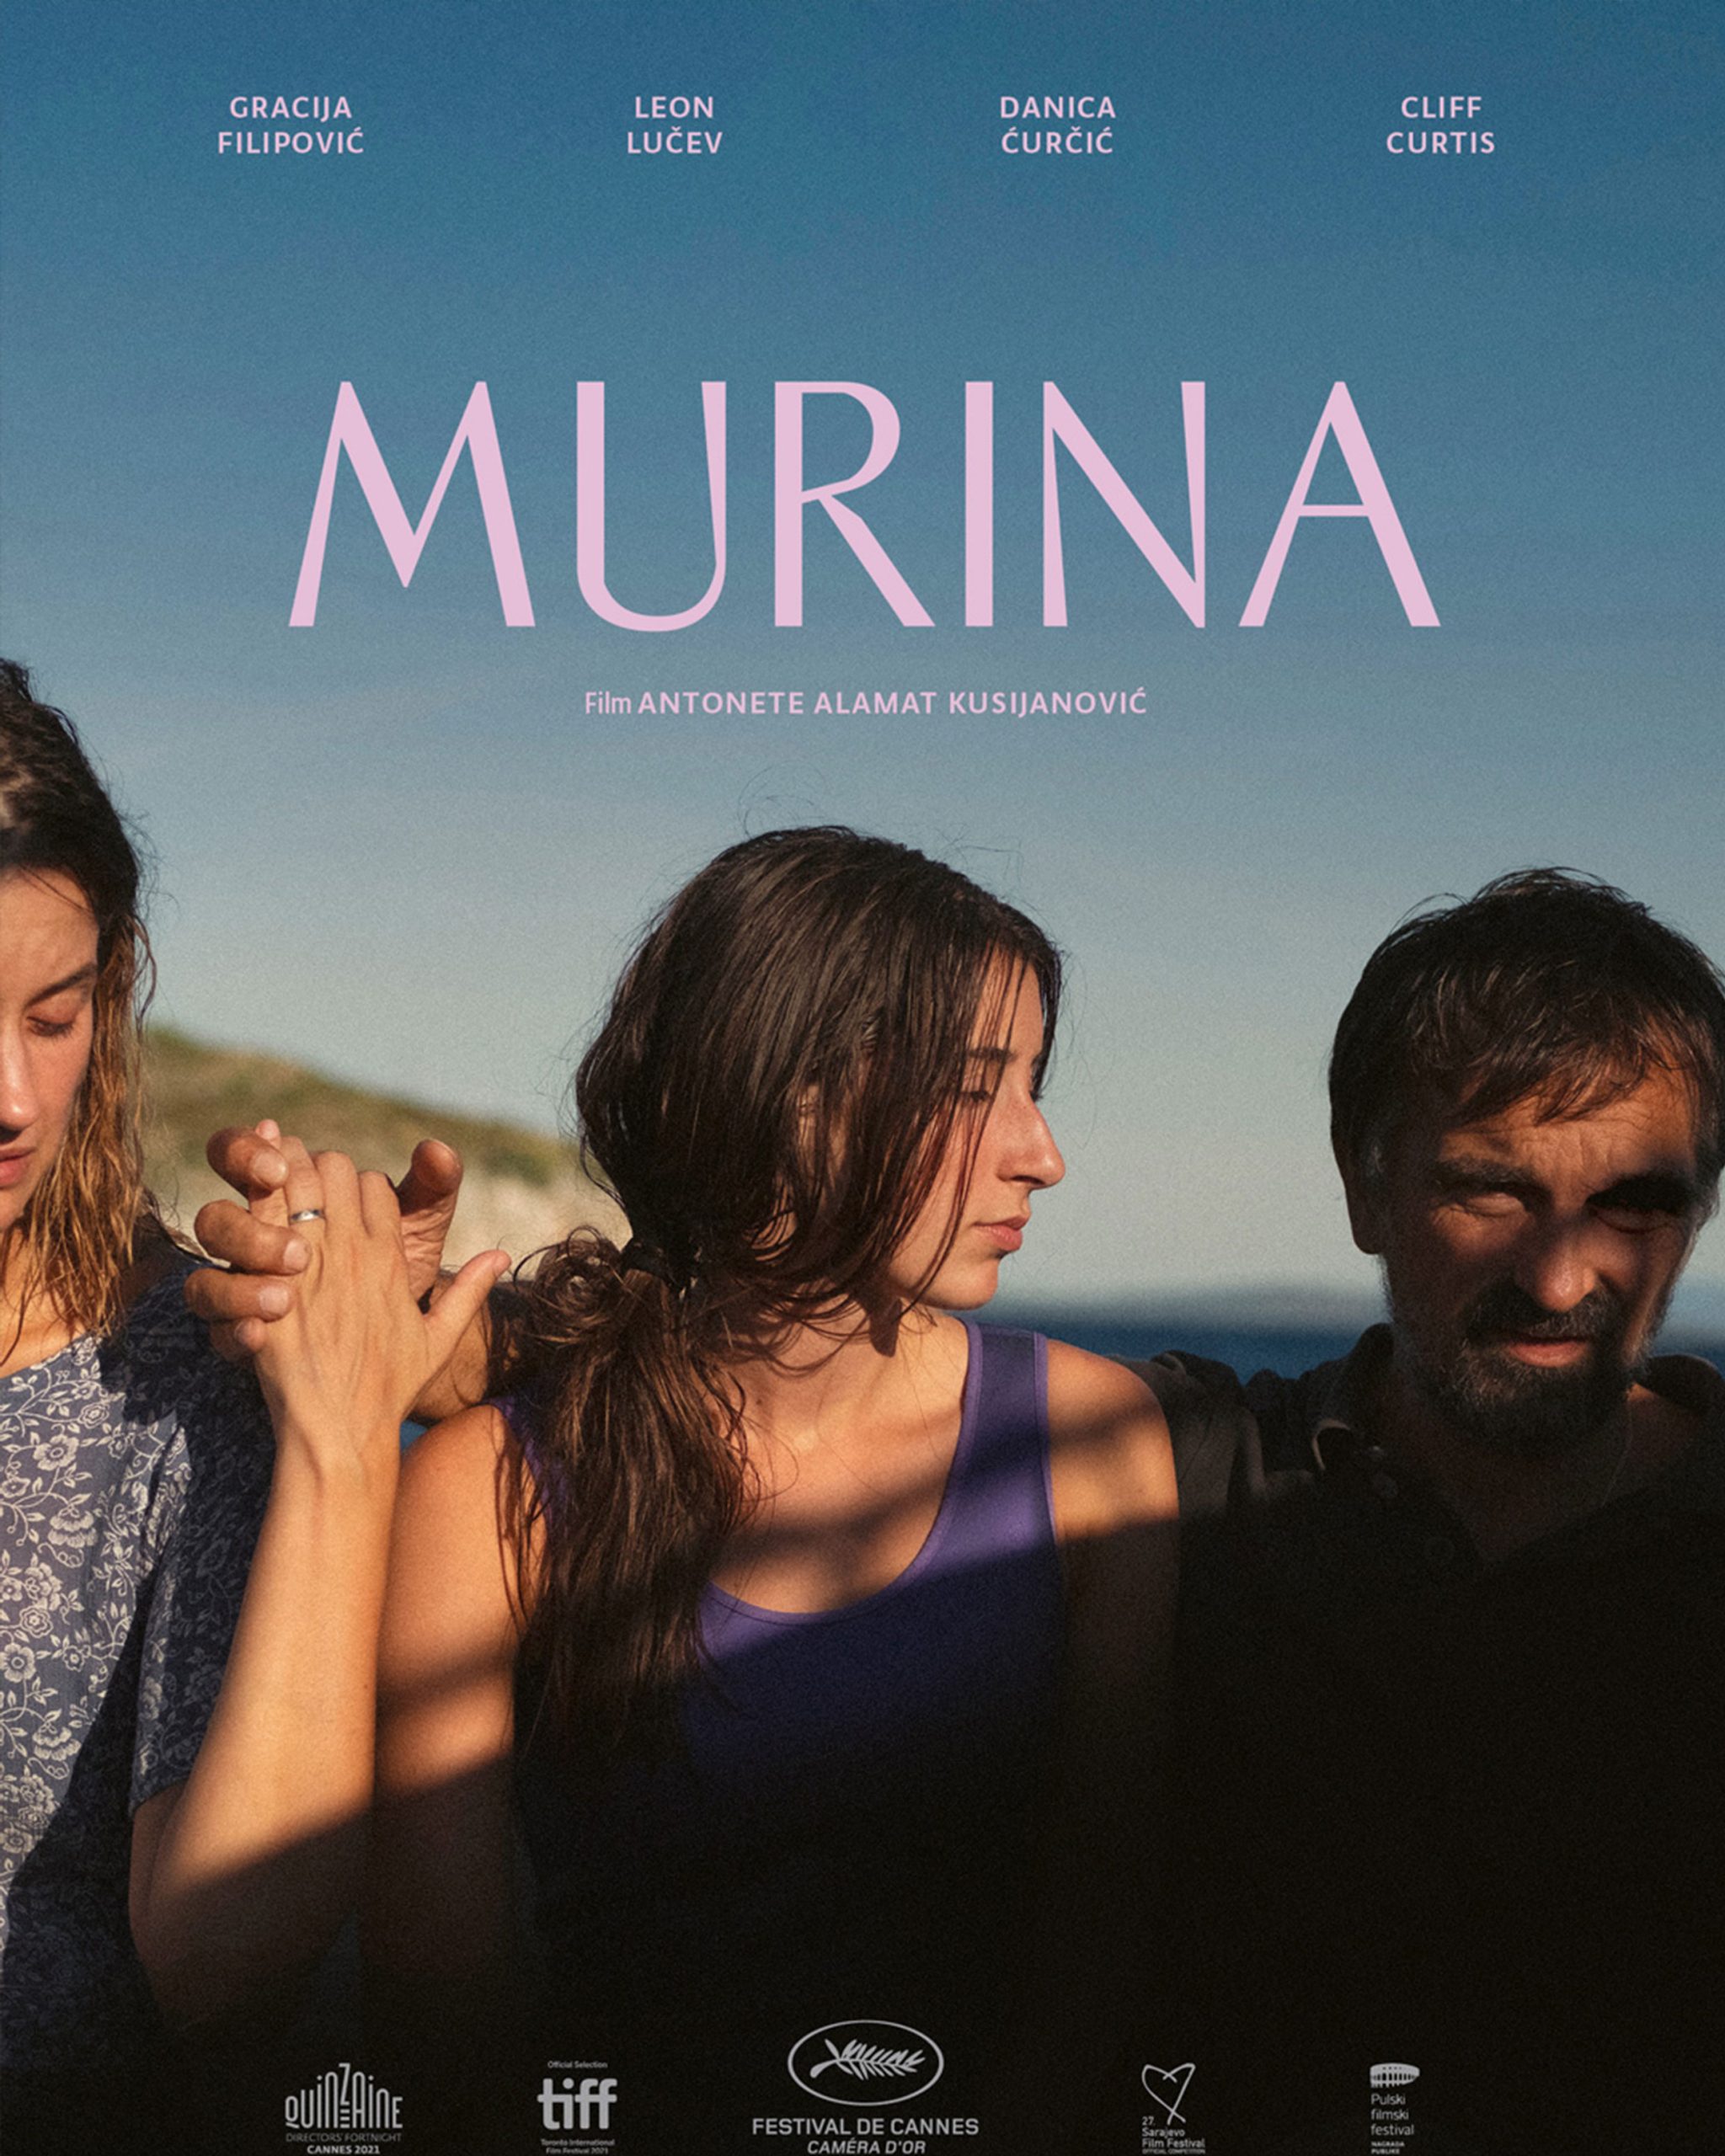 Ovoga petka ne propustite nagrađivani film "Murina" u Ljetnom kinu Krasica!